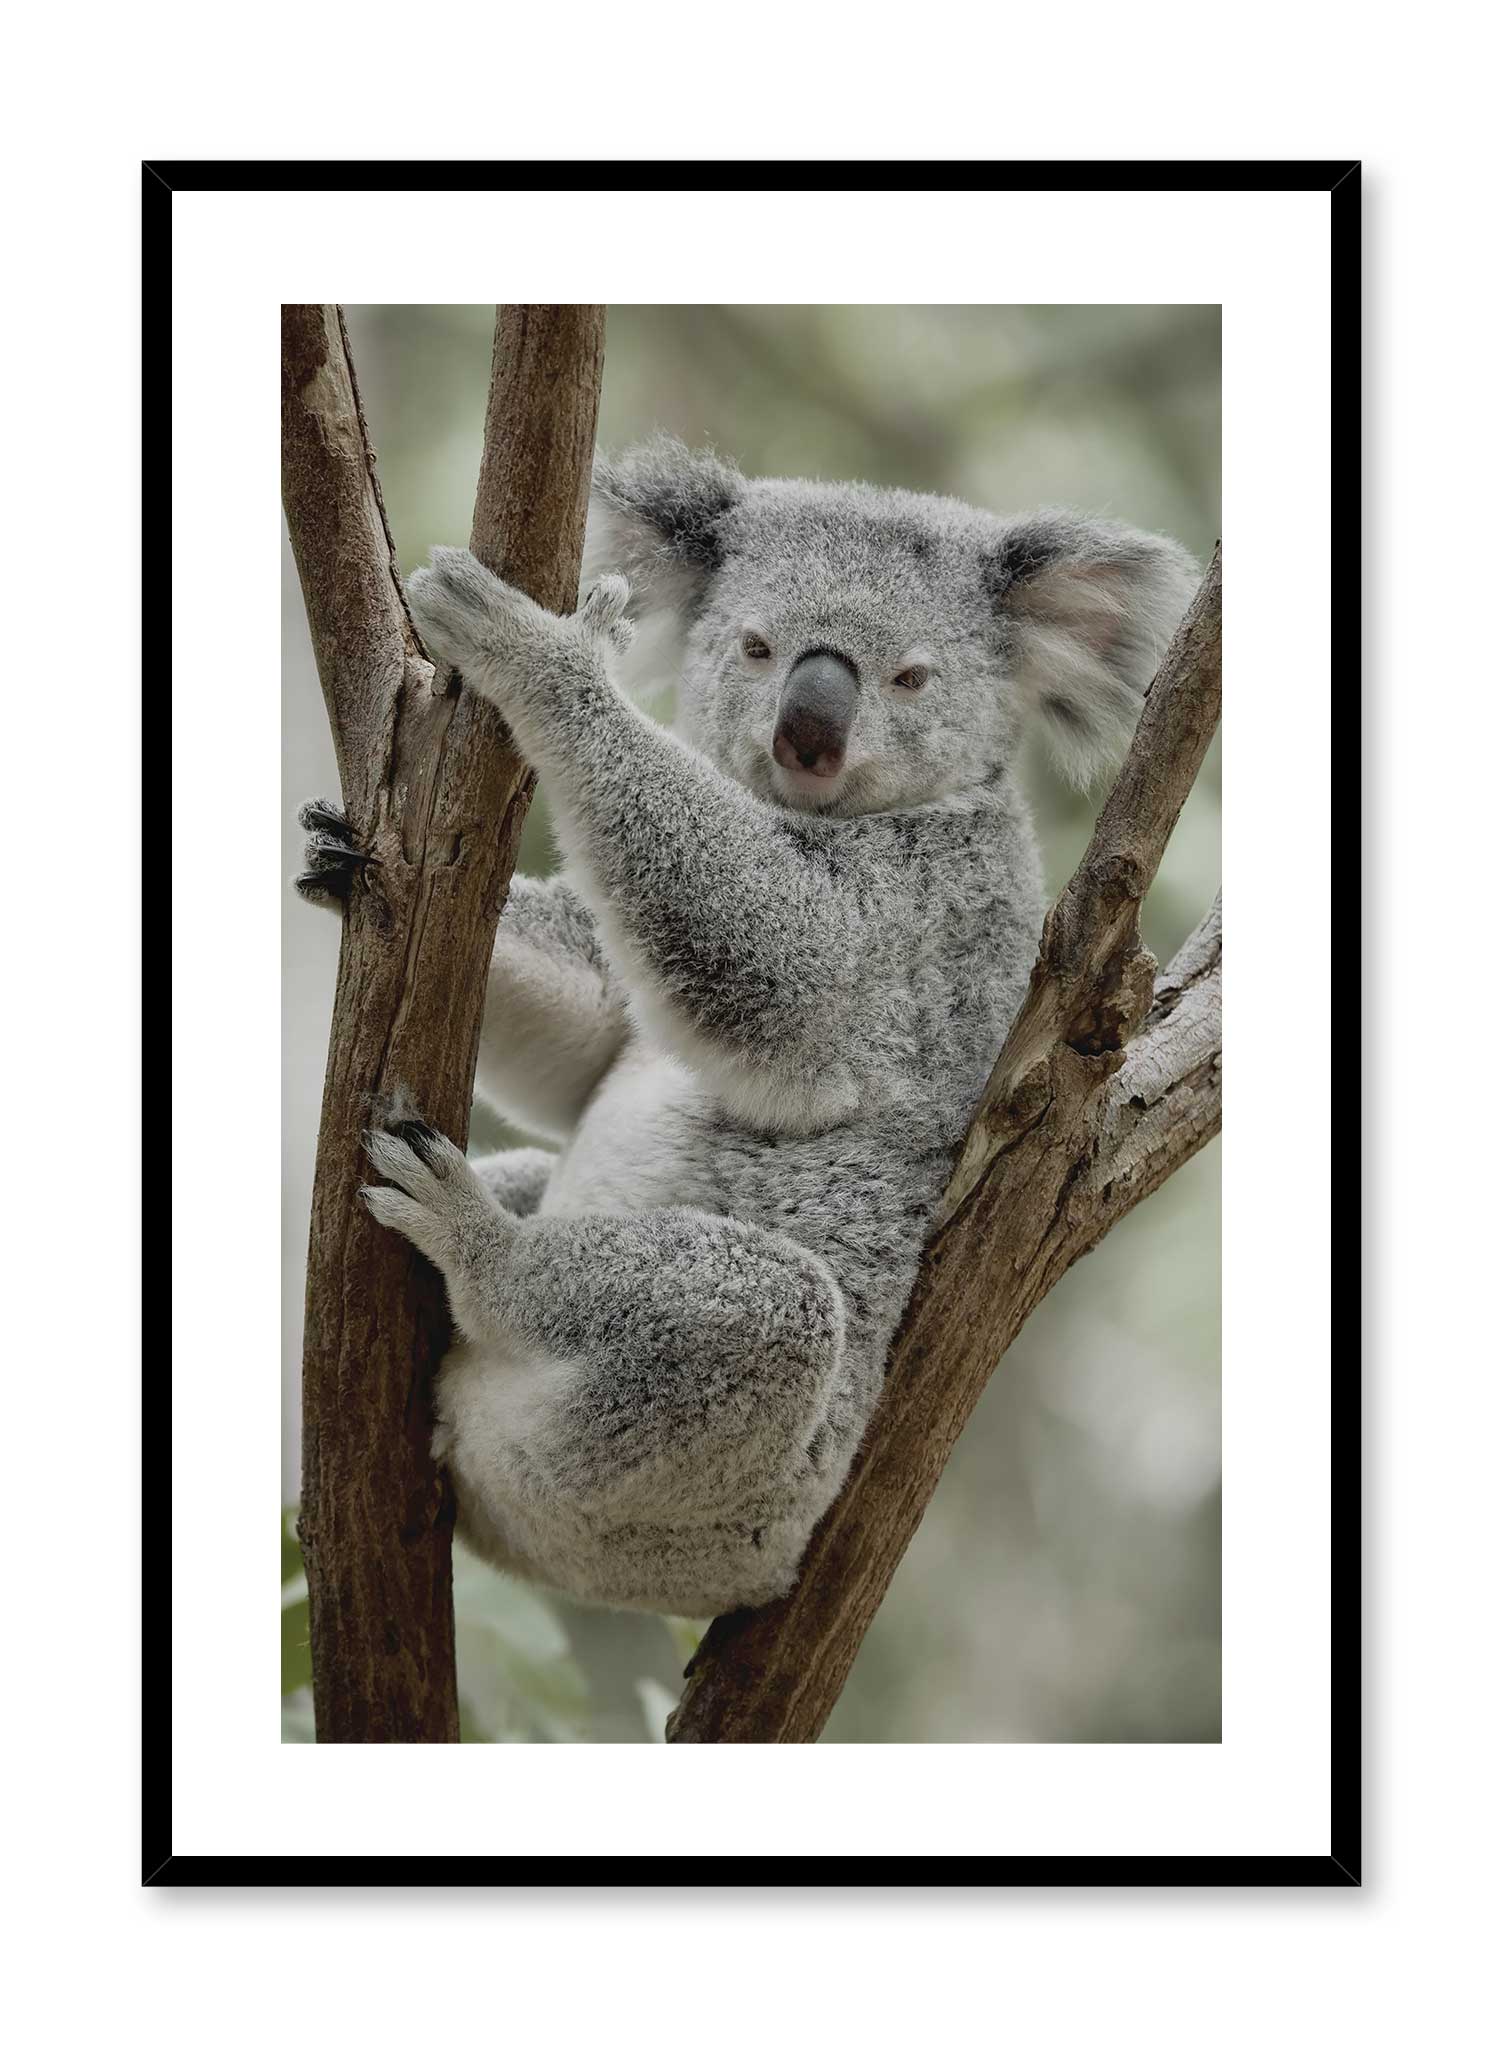 Koala-fied is a minimalist photography of a koala resting on a tree looking like a model by Opposite Wall.